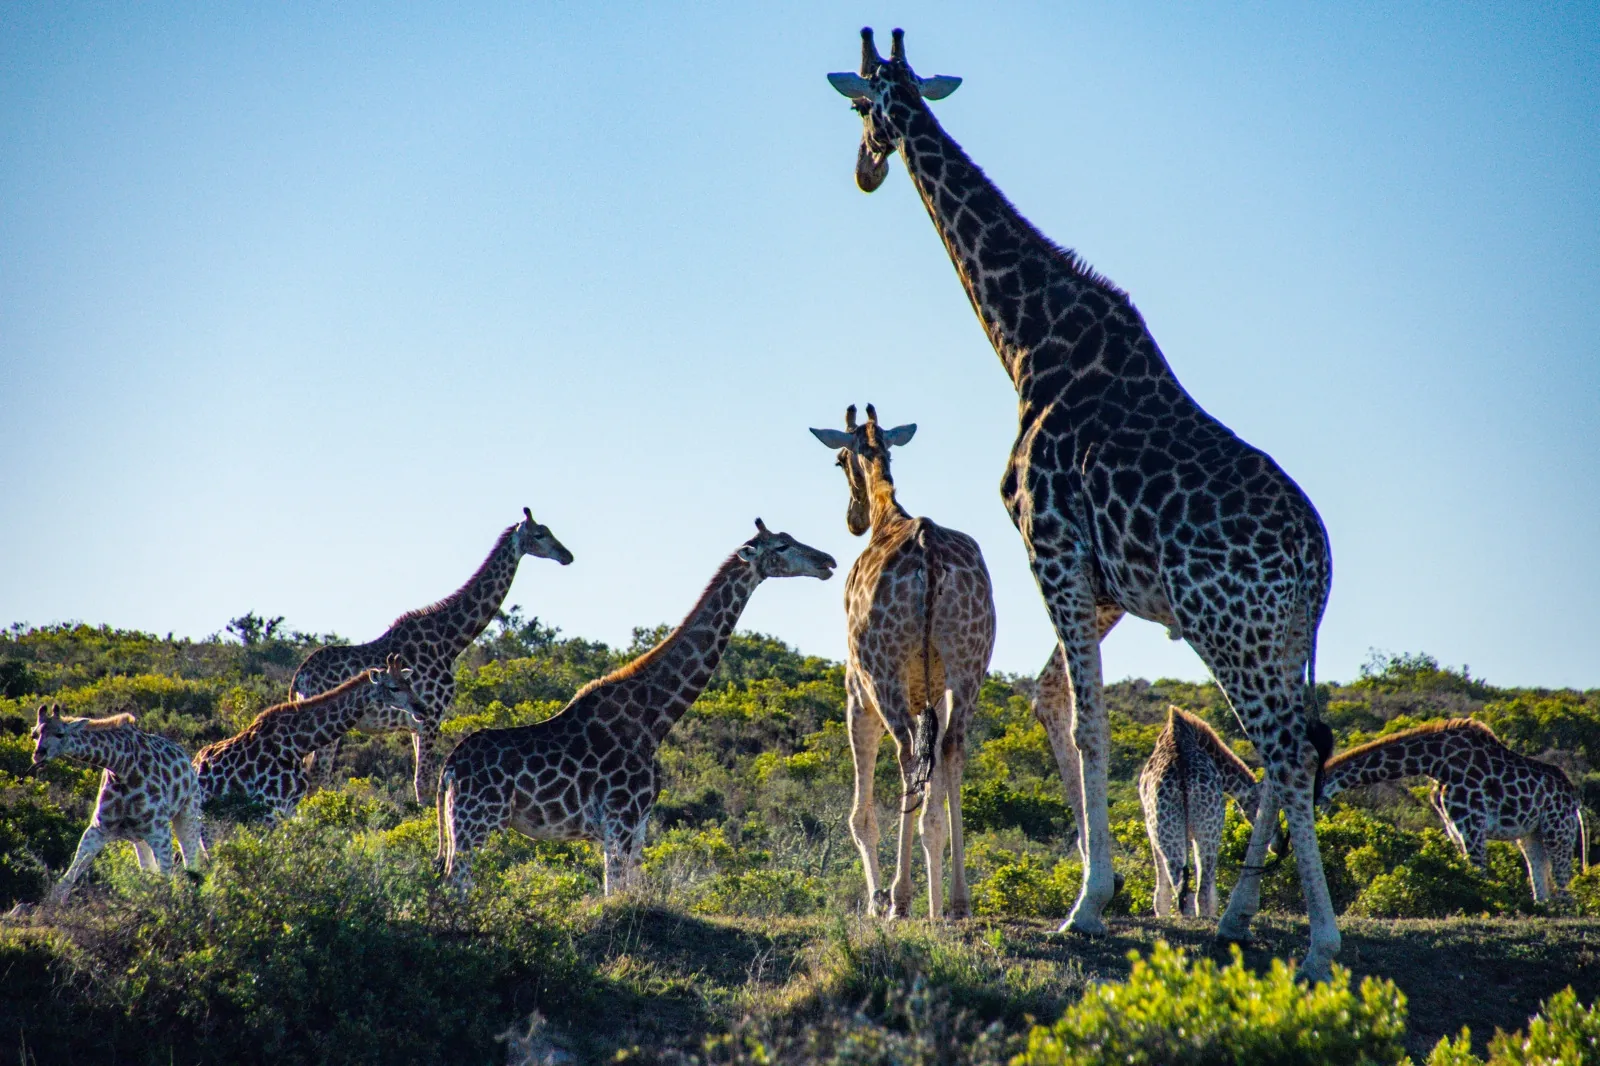 A Herd of Giraffe